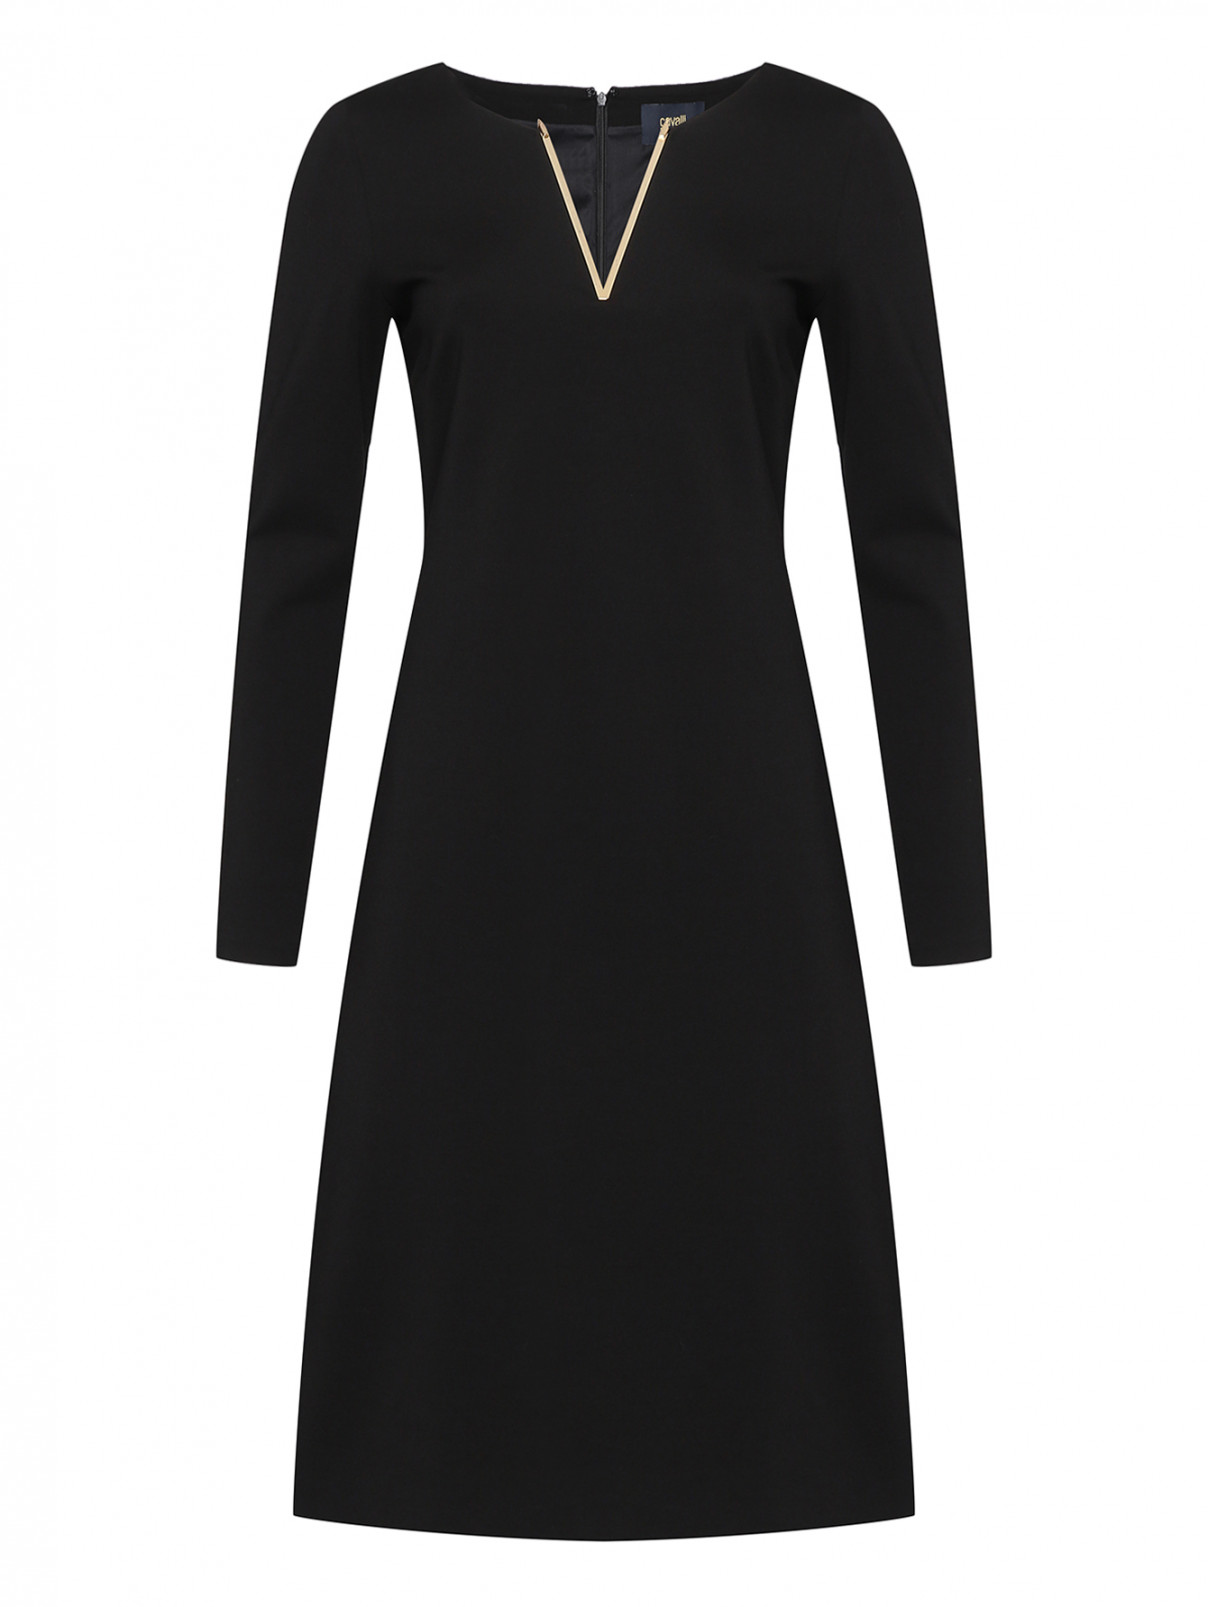 Платье трикотажное с V-образным вырезом Cavalli class  –  Общий вид  – Цвет:  Черный